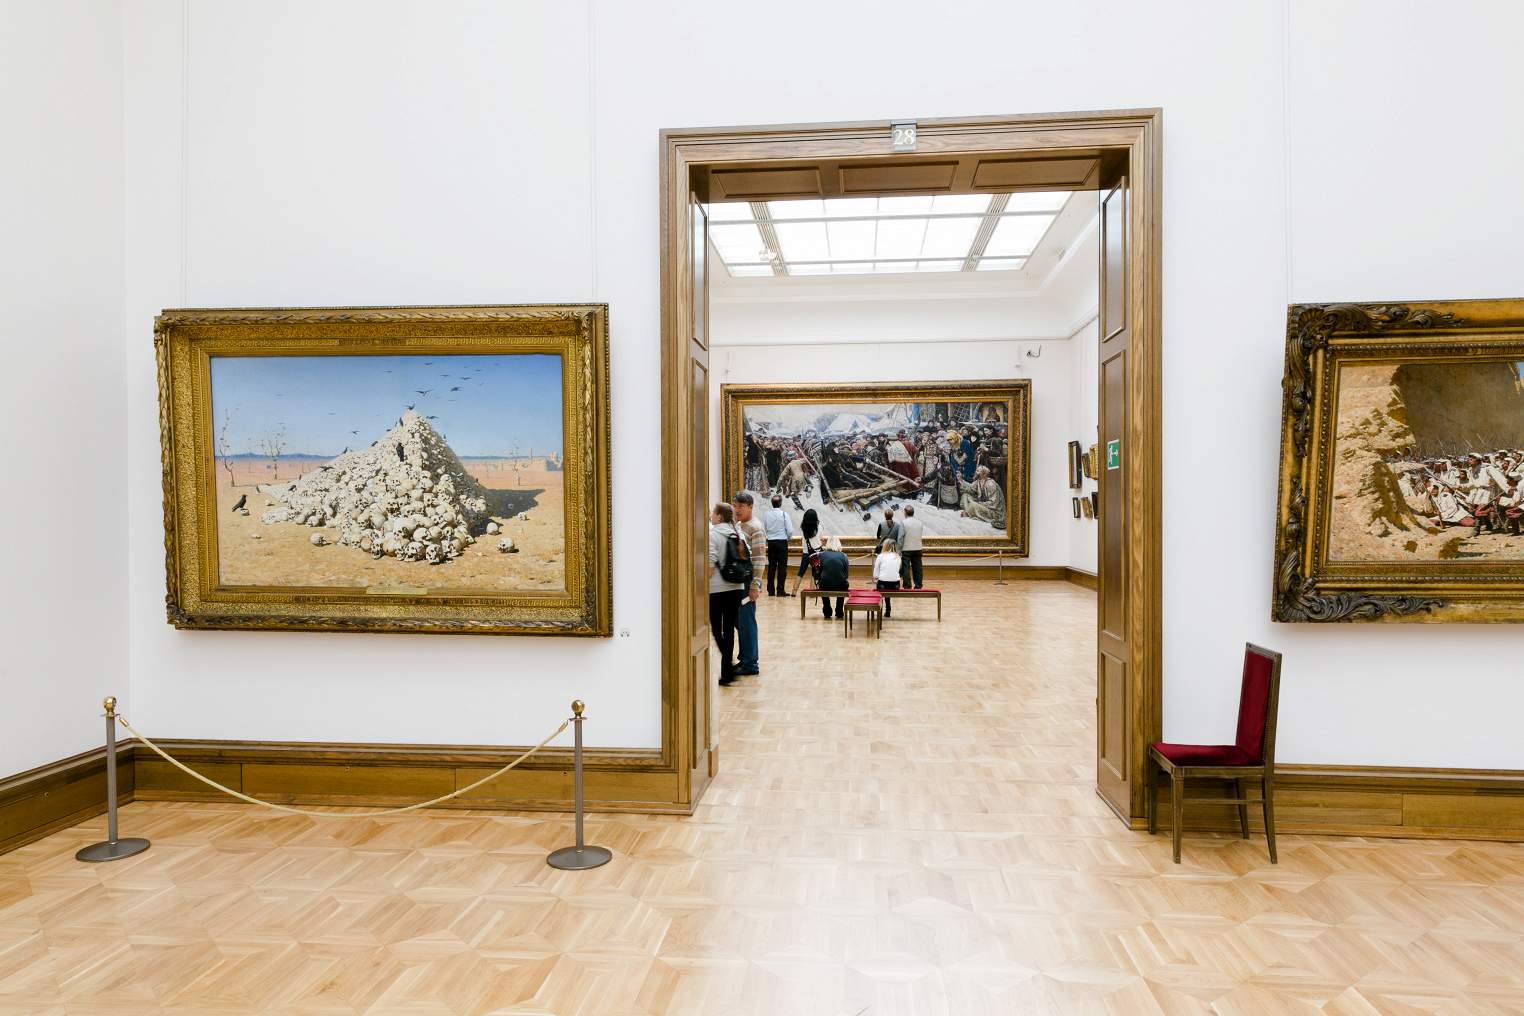 Государственная Третьяковская галерея: описание, экспозиции, исторические факты